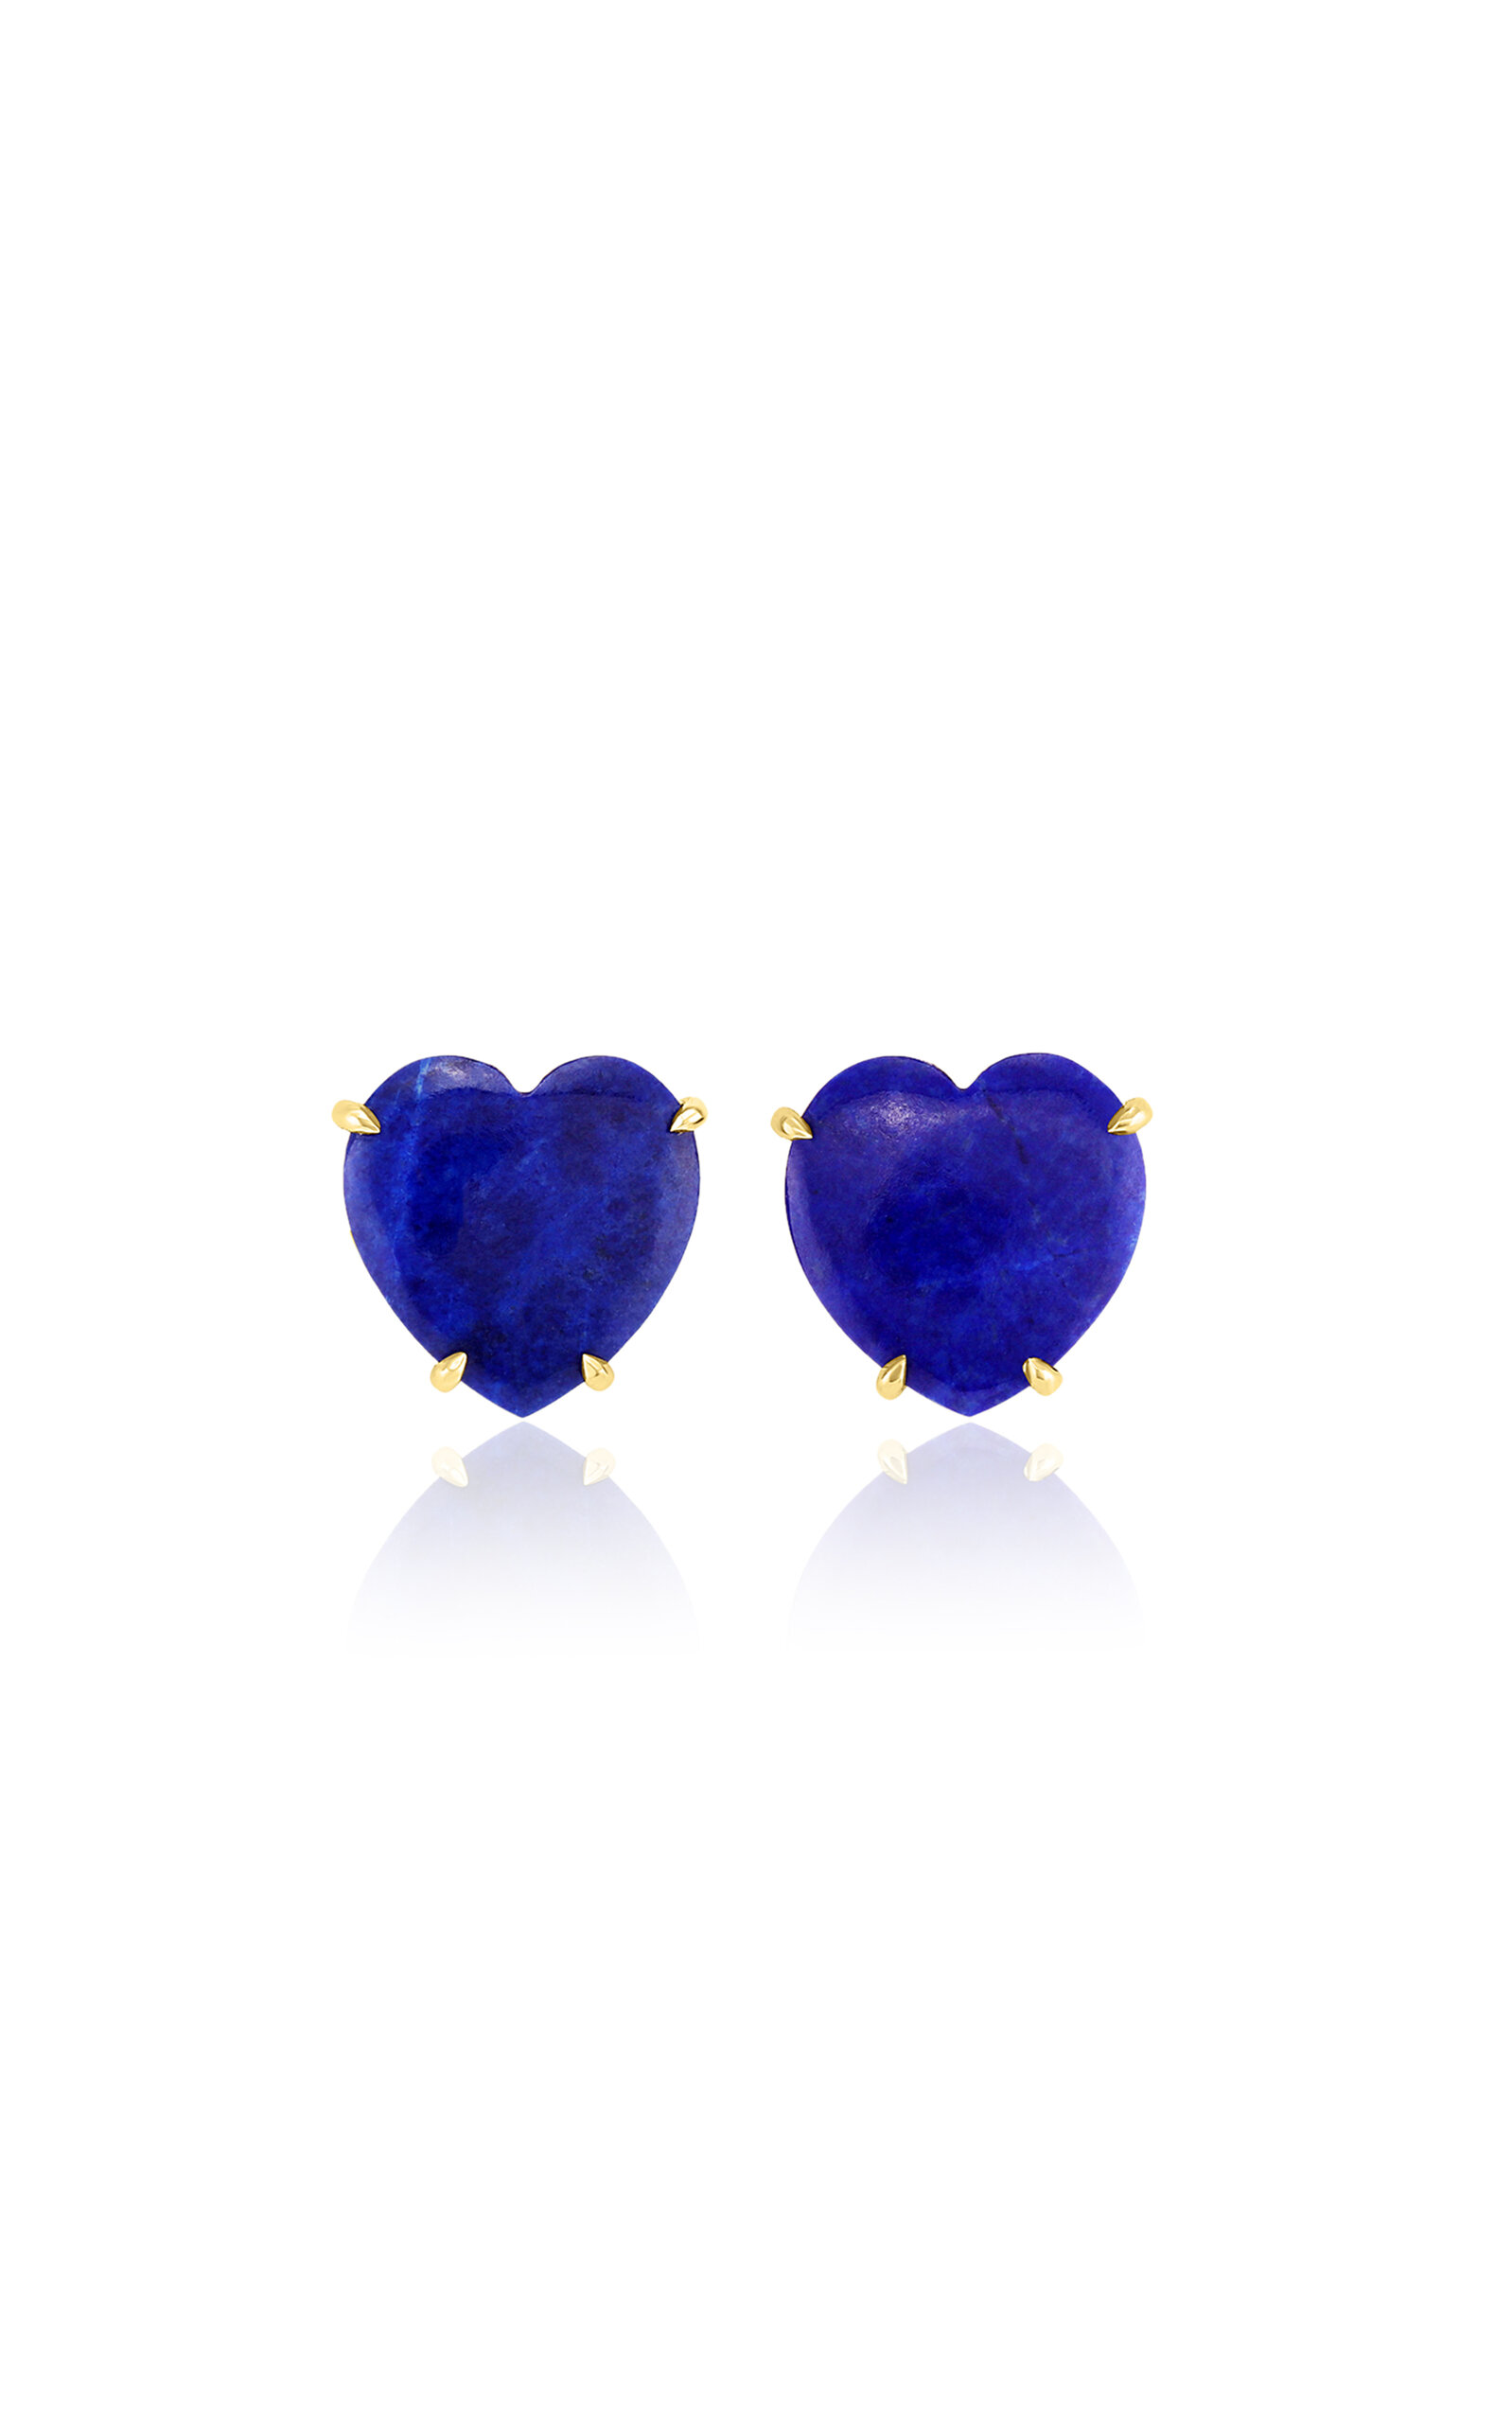 M.spalten Women's The Single Heart 14k Yellow Gold Lapis Earrings In Blue